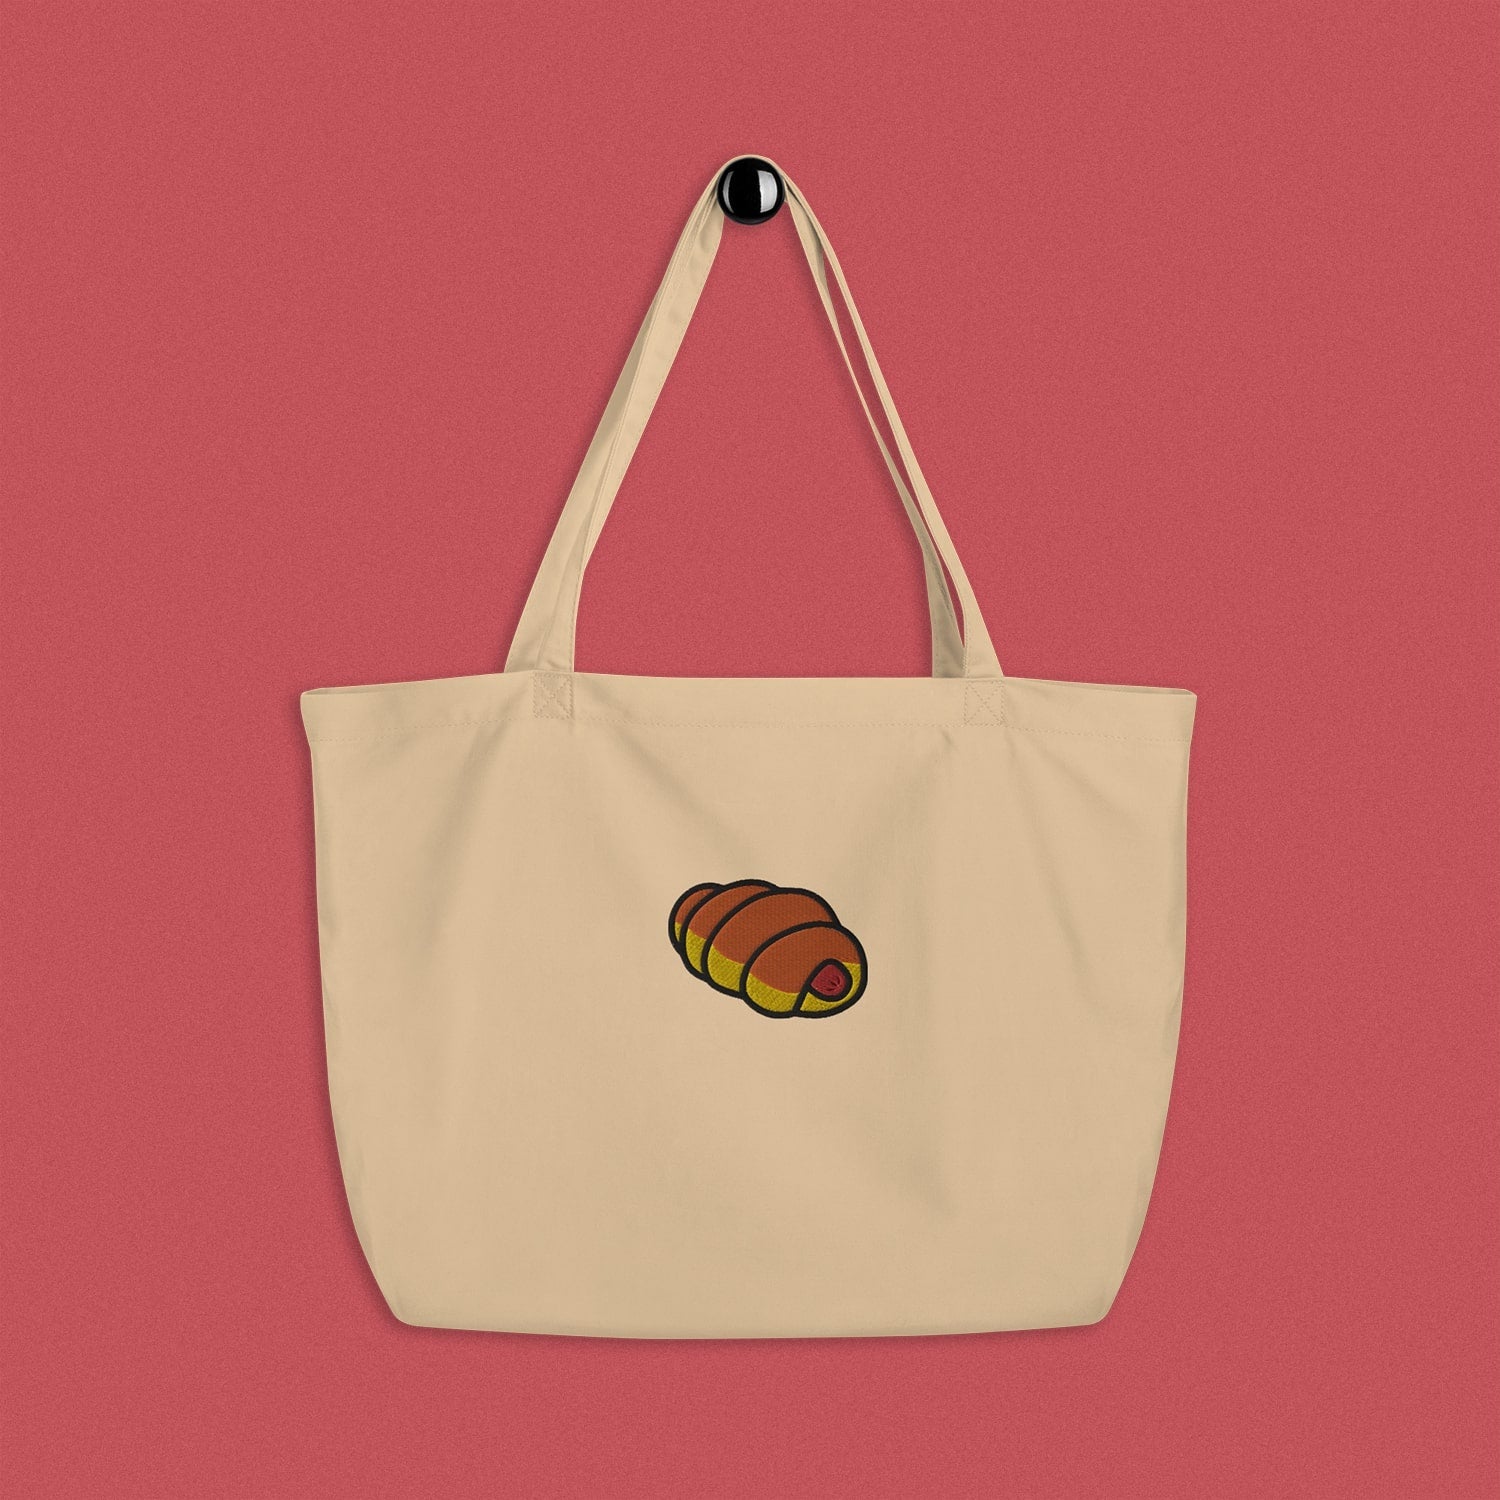 Pastry Breakfast Croissant Tote Bag Shoulder Bag Shopping Bag 